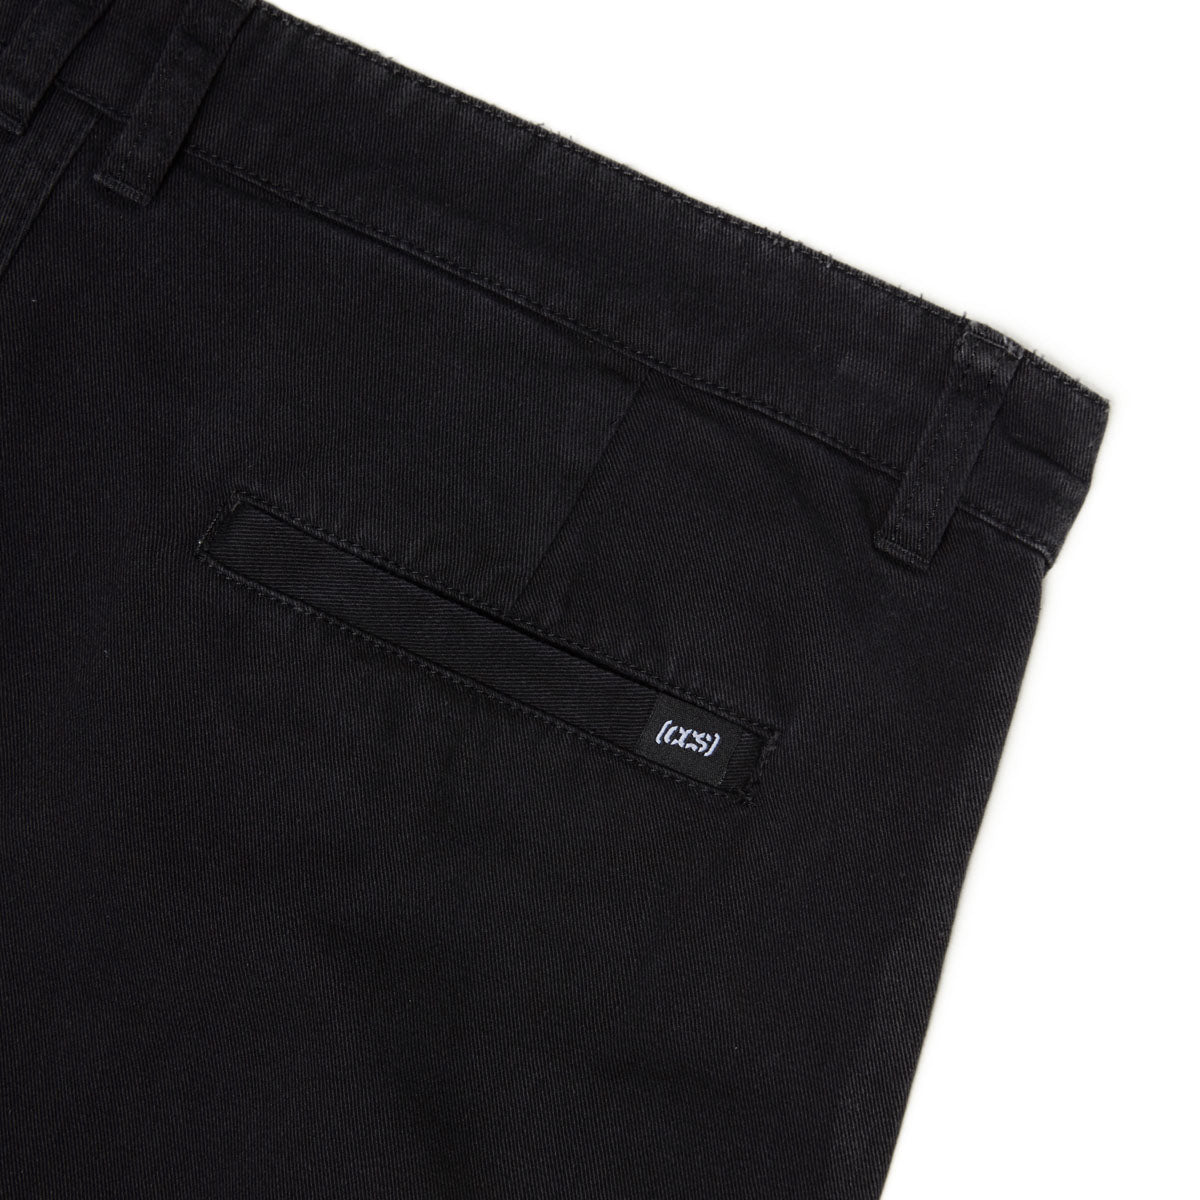 CCS Original Relaxed Chino Pants - Black image 6